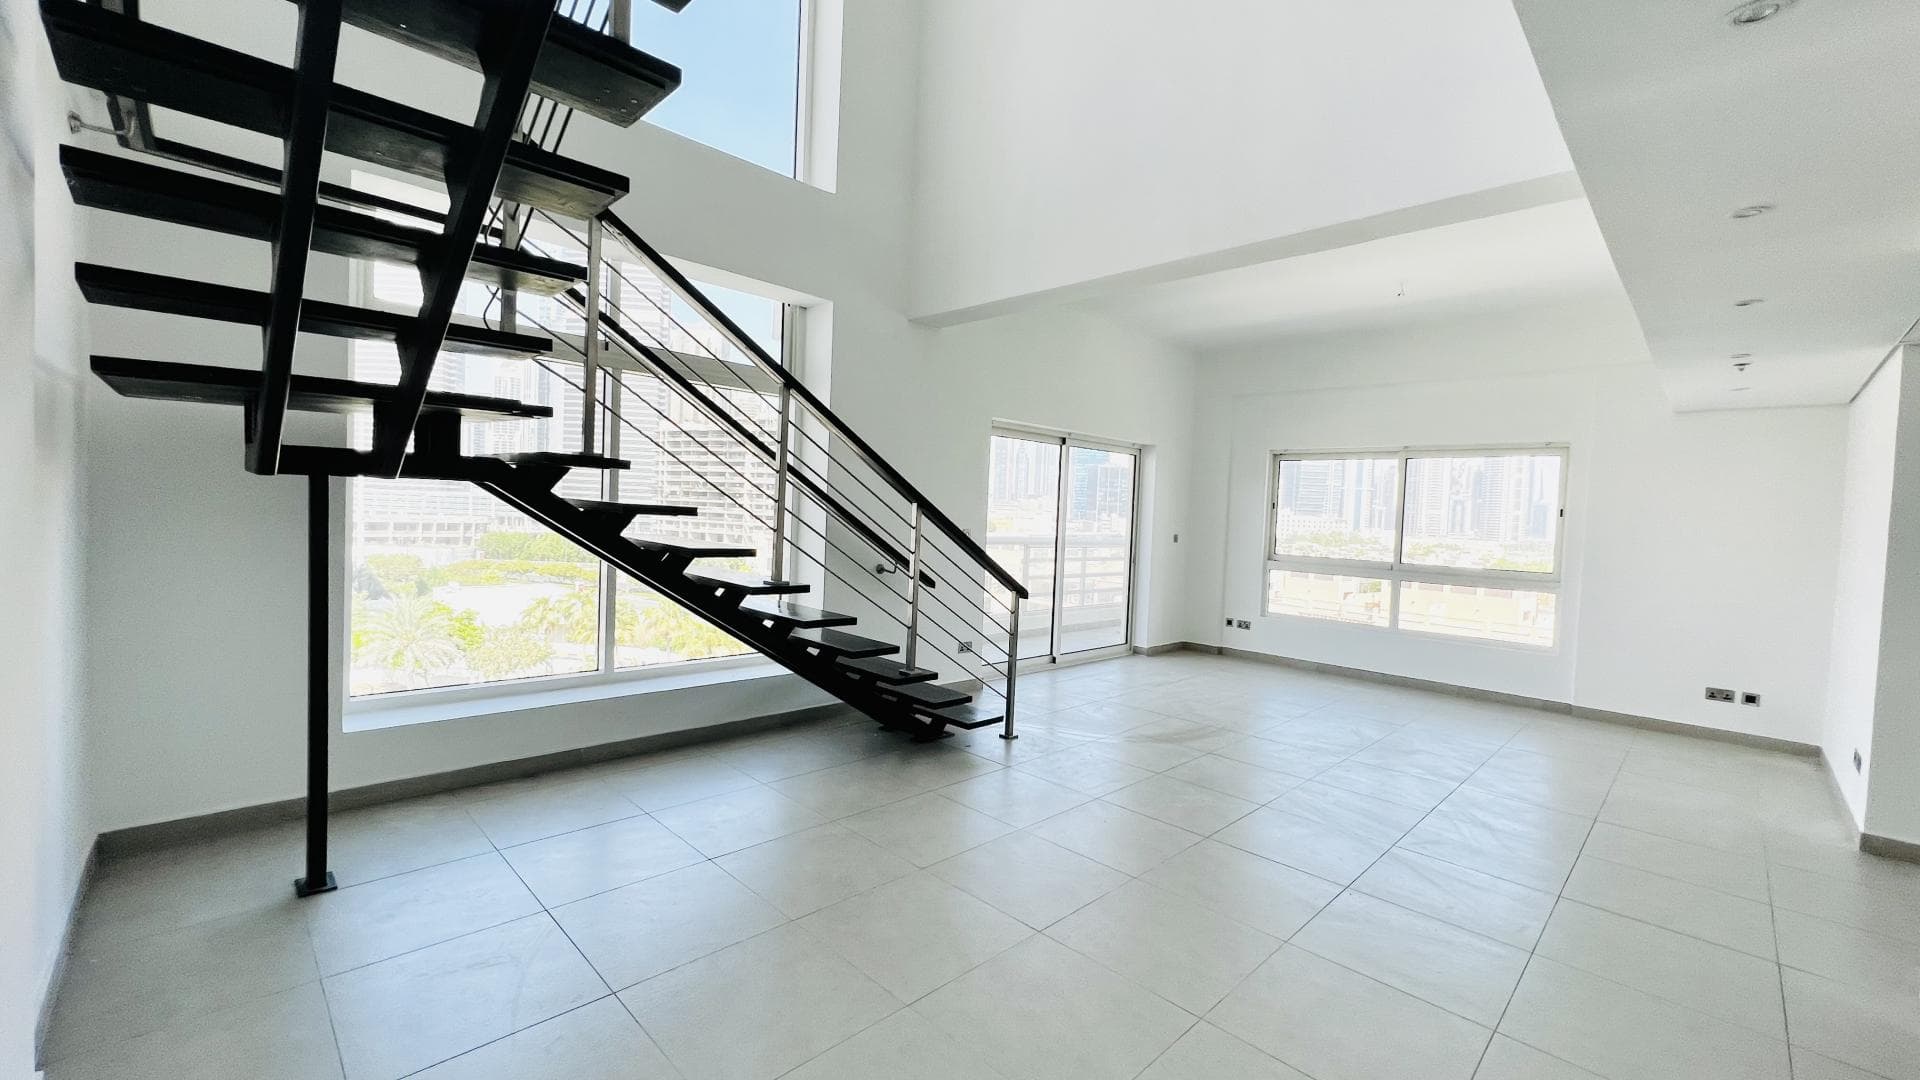 3 Bedroom Apartment For Rent Al Fahad Tower 2 Lp38566 5cf6d17bbeb3340.jpg